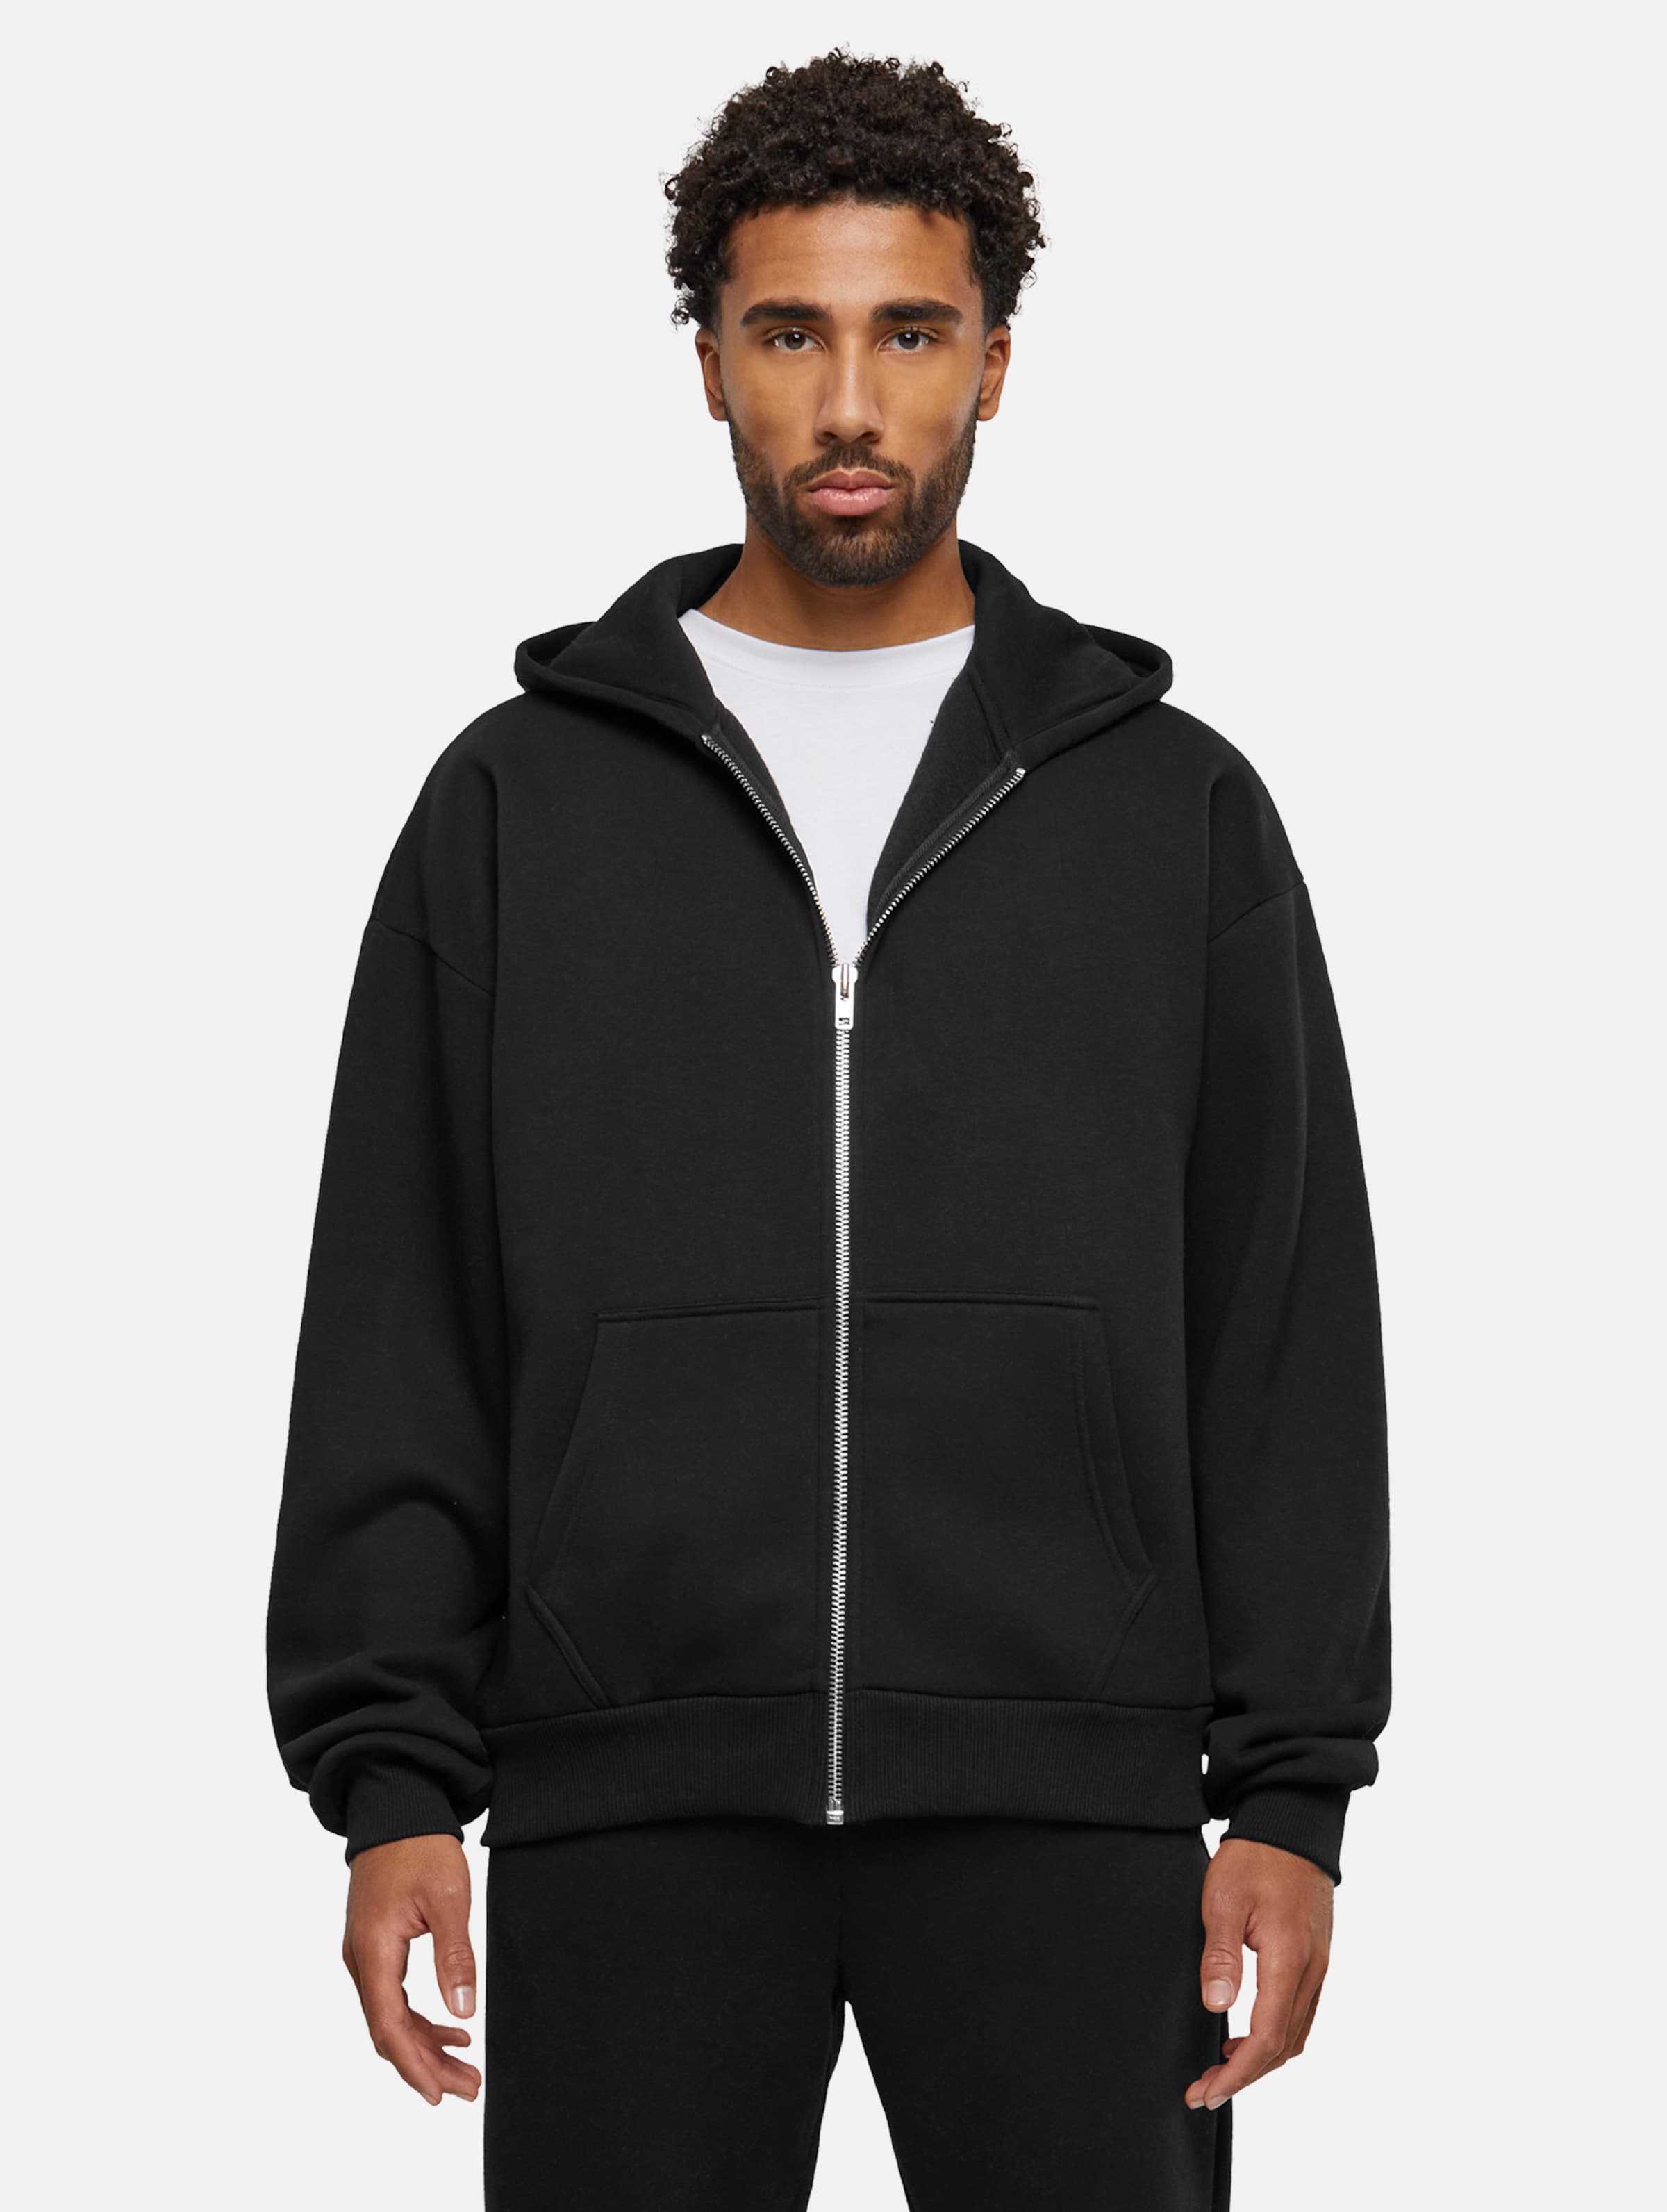 Prohibited Oversized Zip Hoodies Männer,Unisex op kleur zwart, Maat XL